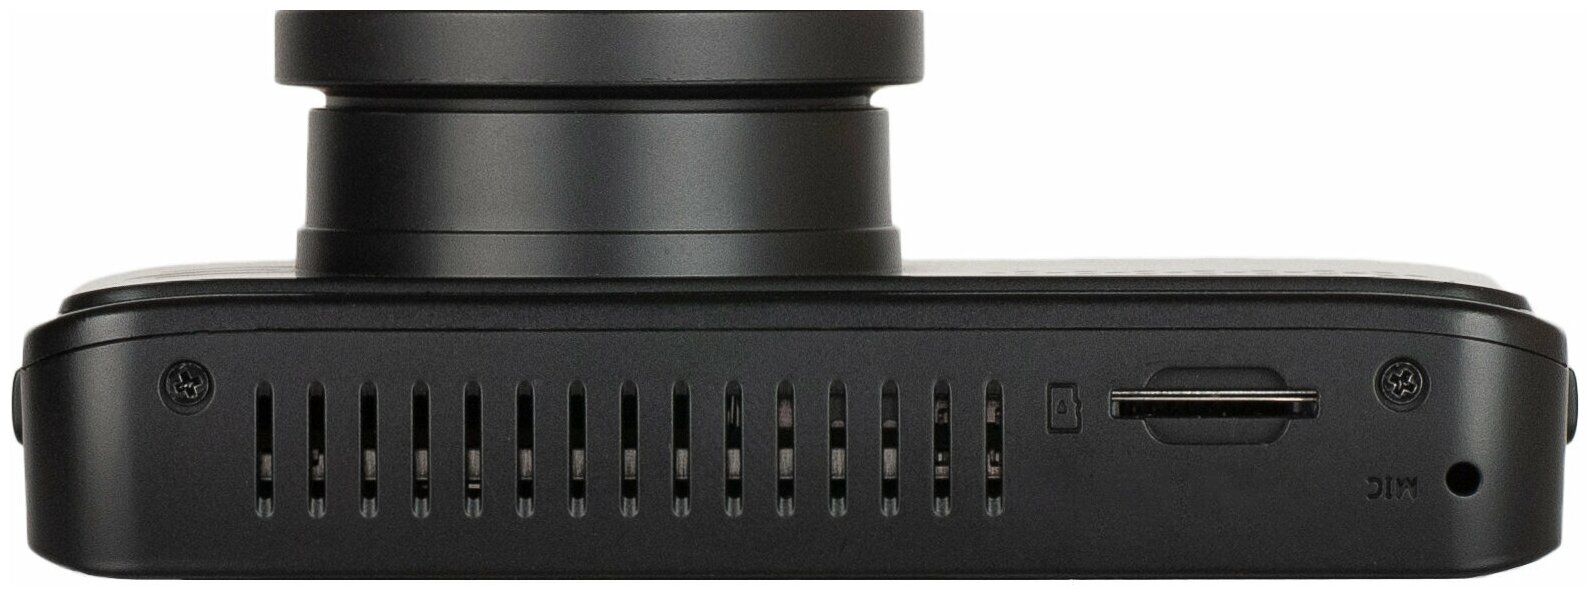 Комбо-устройство/ Видеорегистратор с оповещениями о камерах Blackview V PRO с картой памяти 64Гб